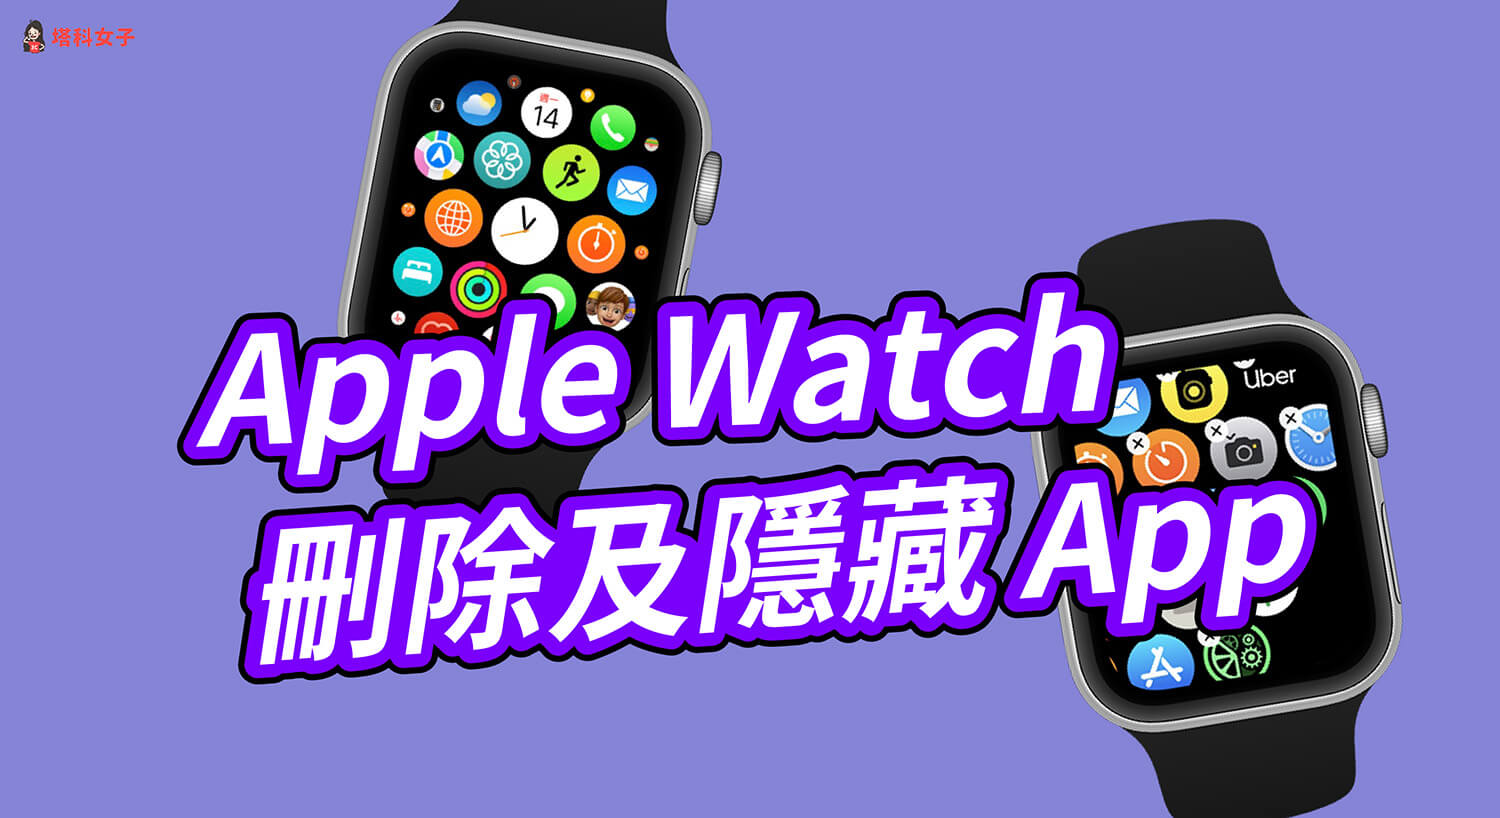 Apple Watch 刪除 App 及隱藏 App 教學，簡單 5 步驟！